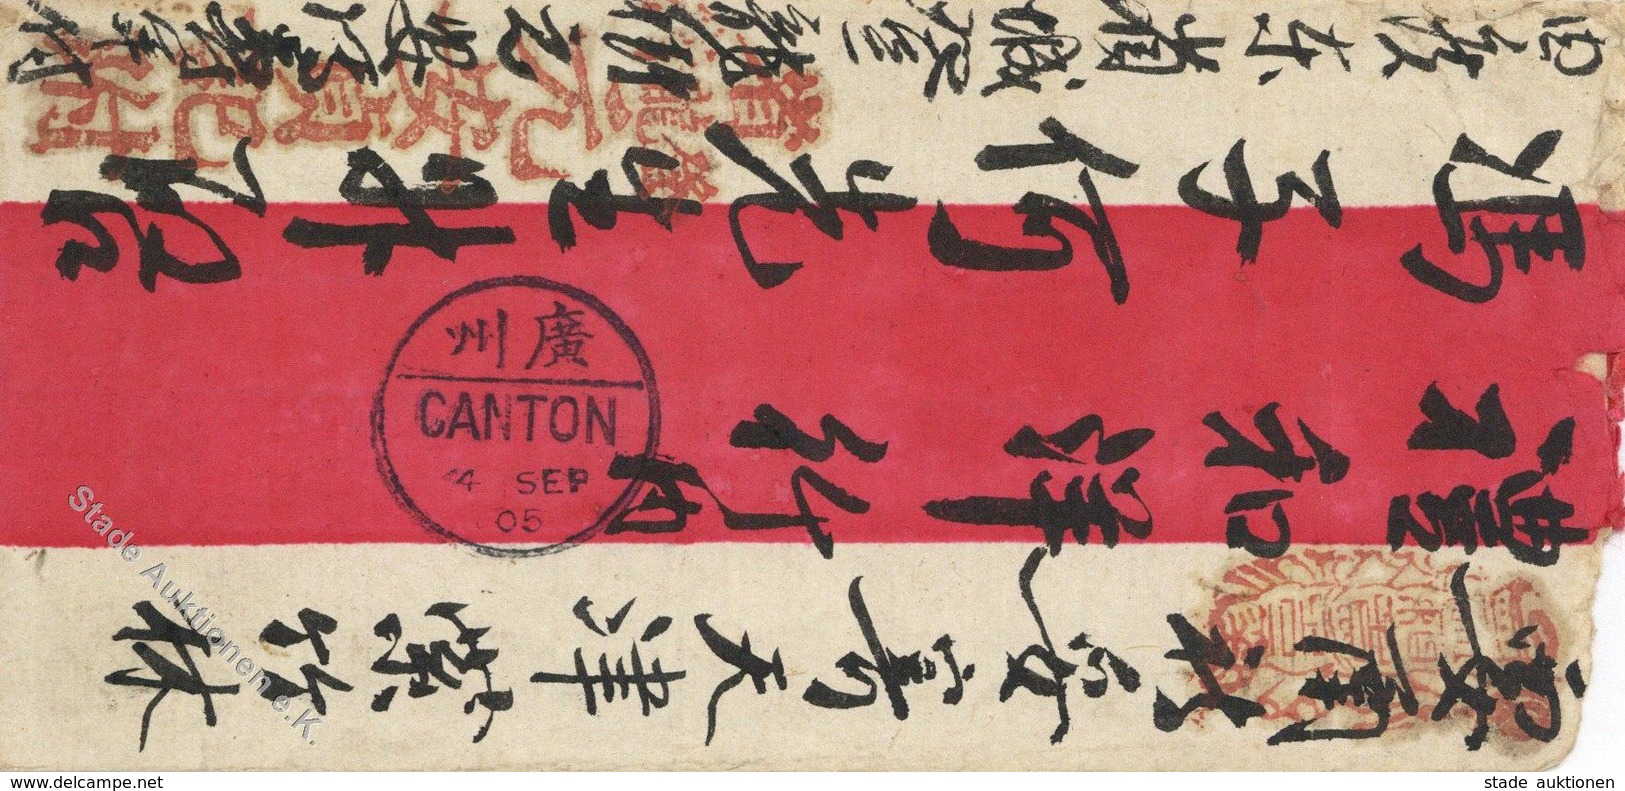 Kolonien CHINA - Dekorativer Chinabrief O Canton 1905 I Colonies - Histoire